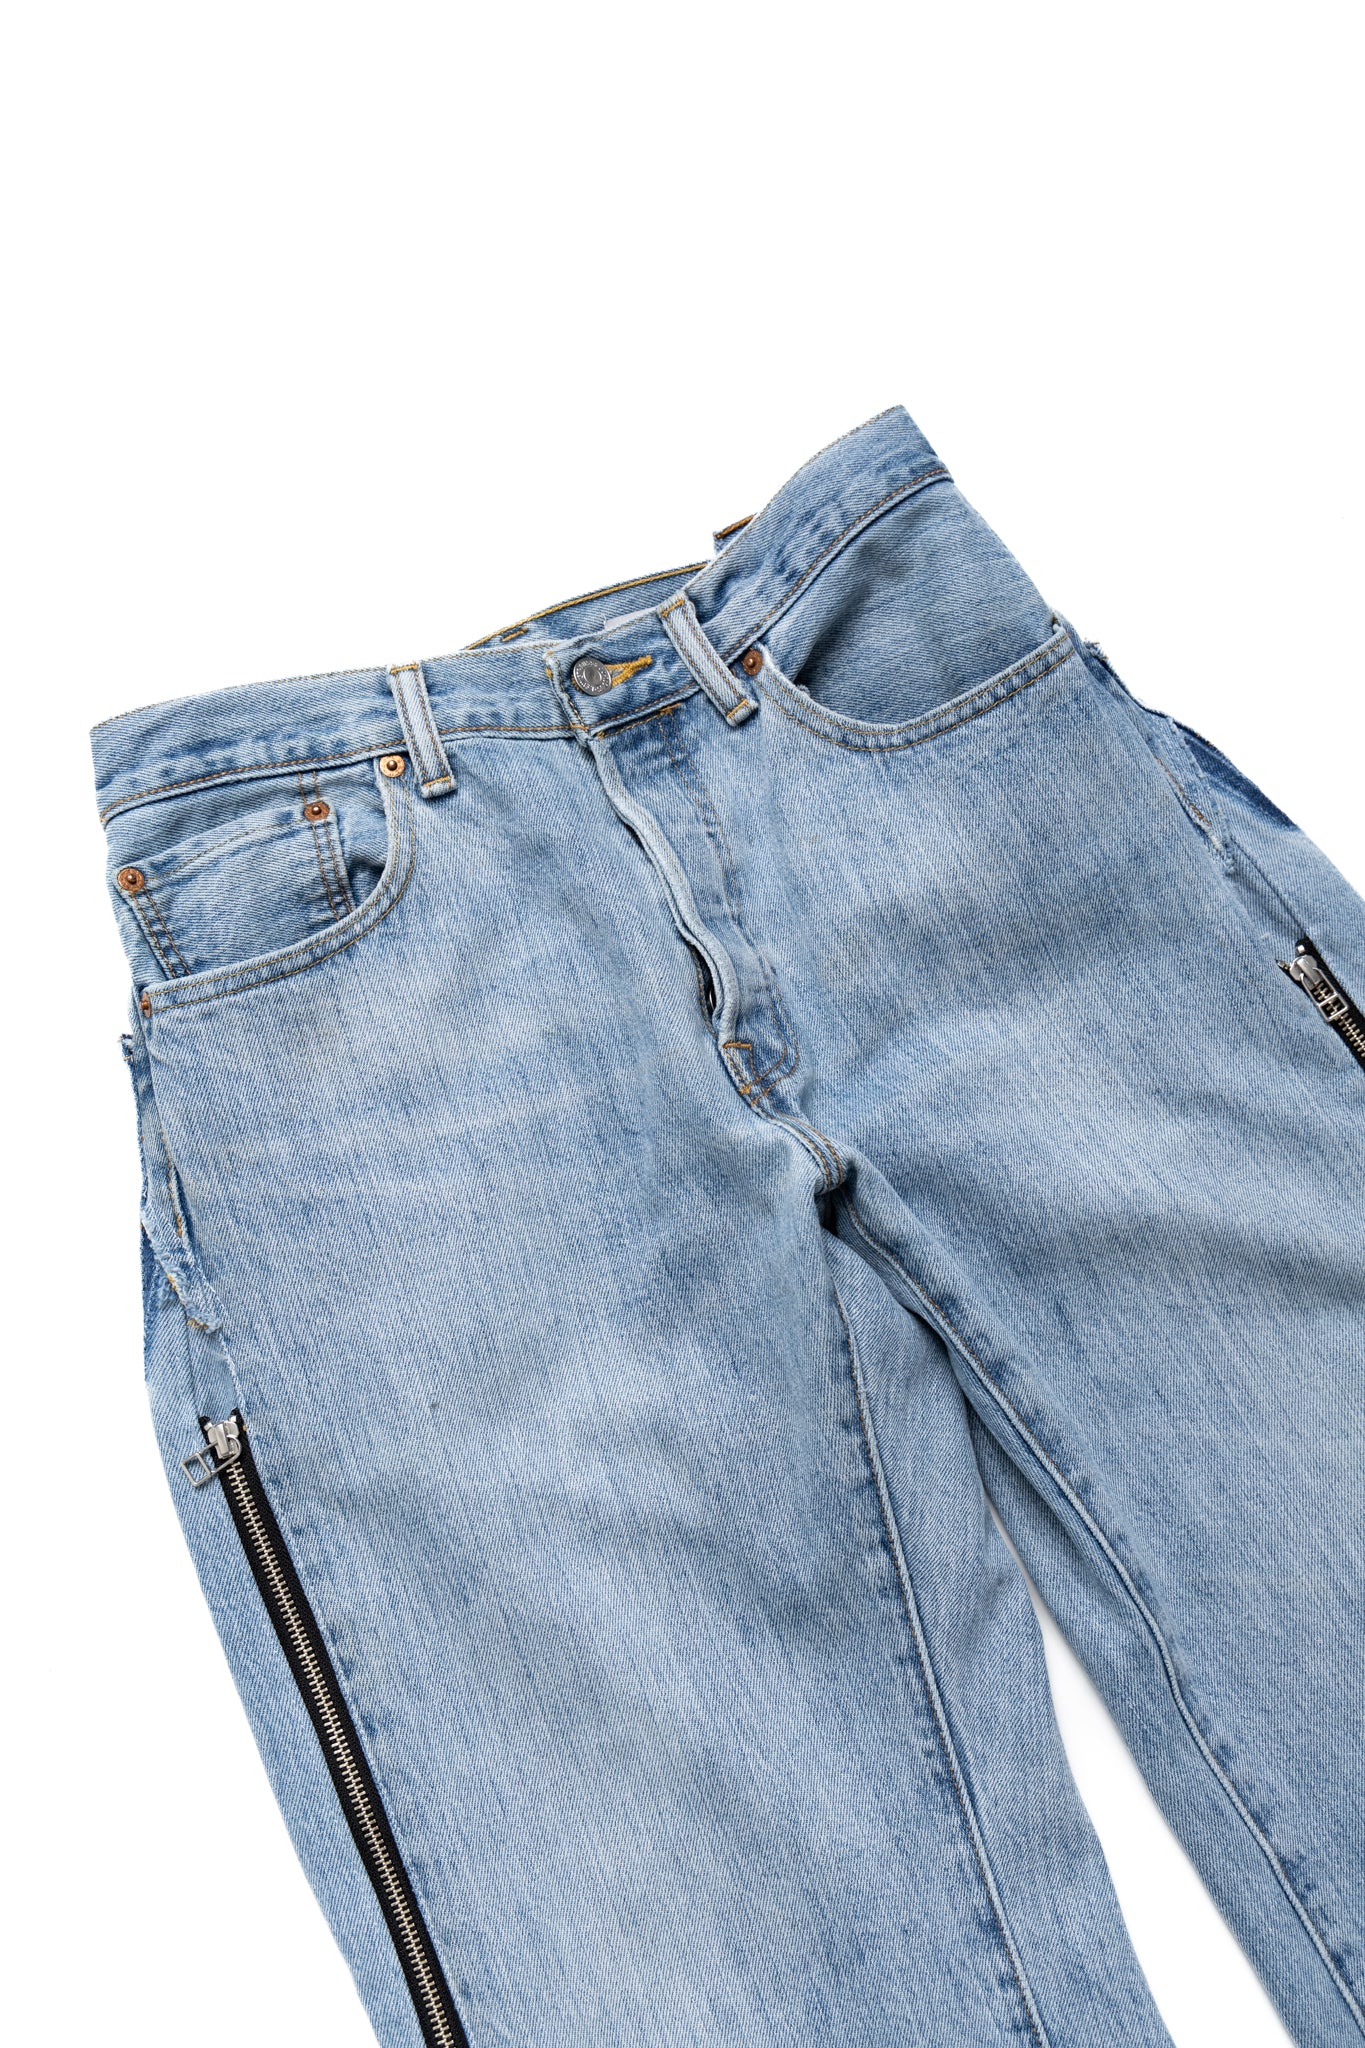 Zip Baggy Jeans Blue - XS (2)